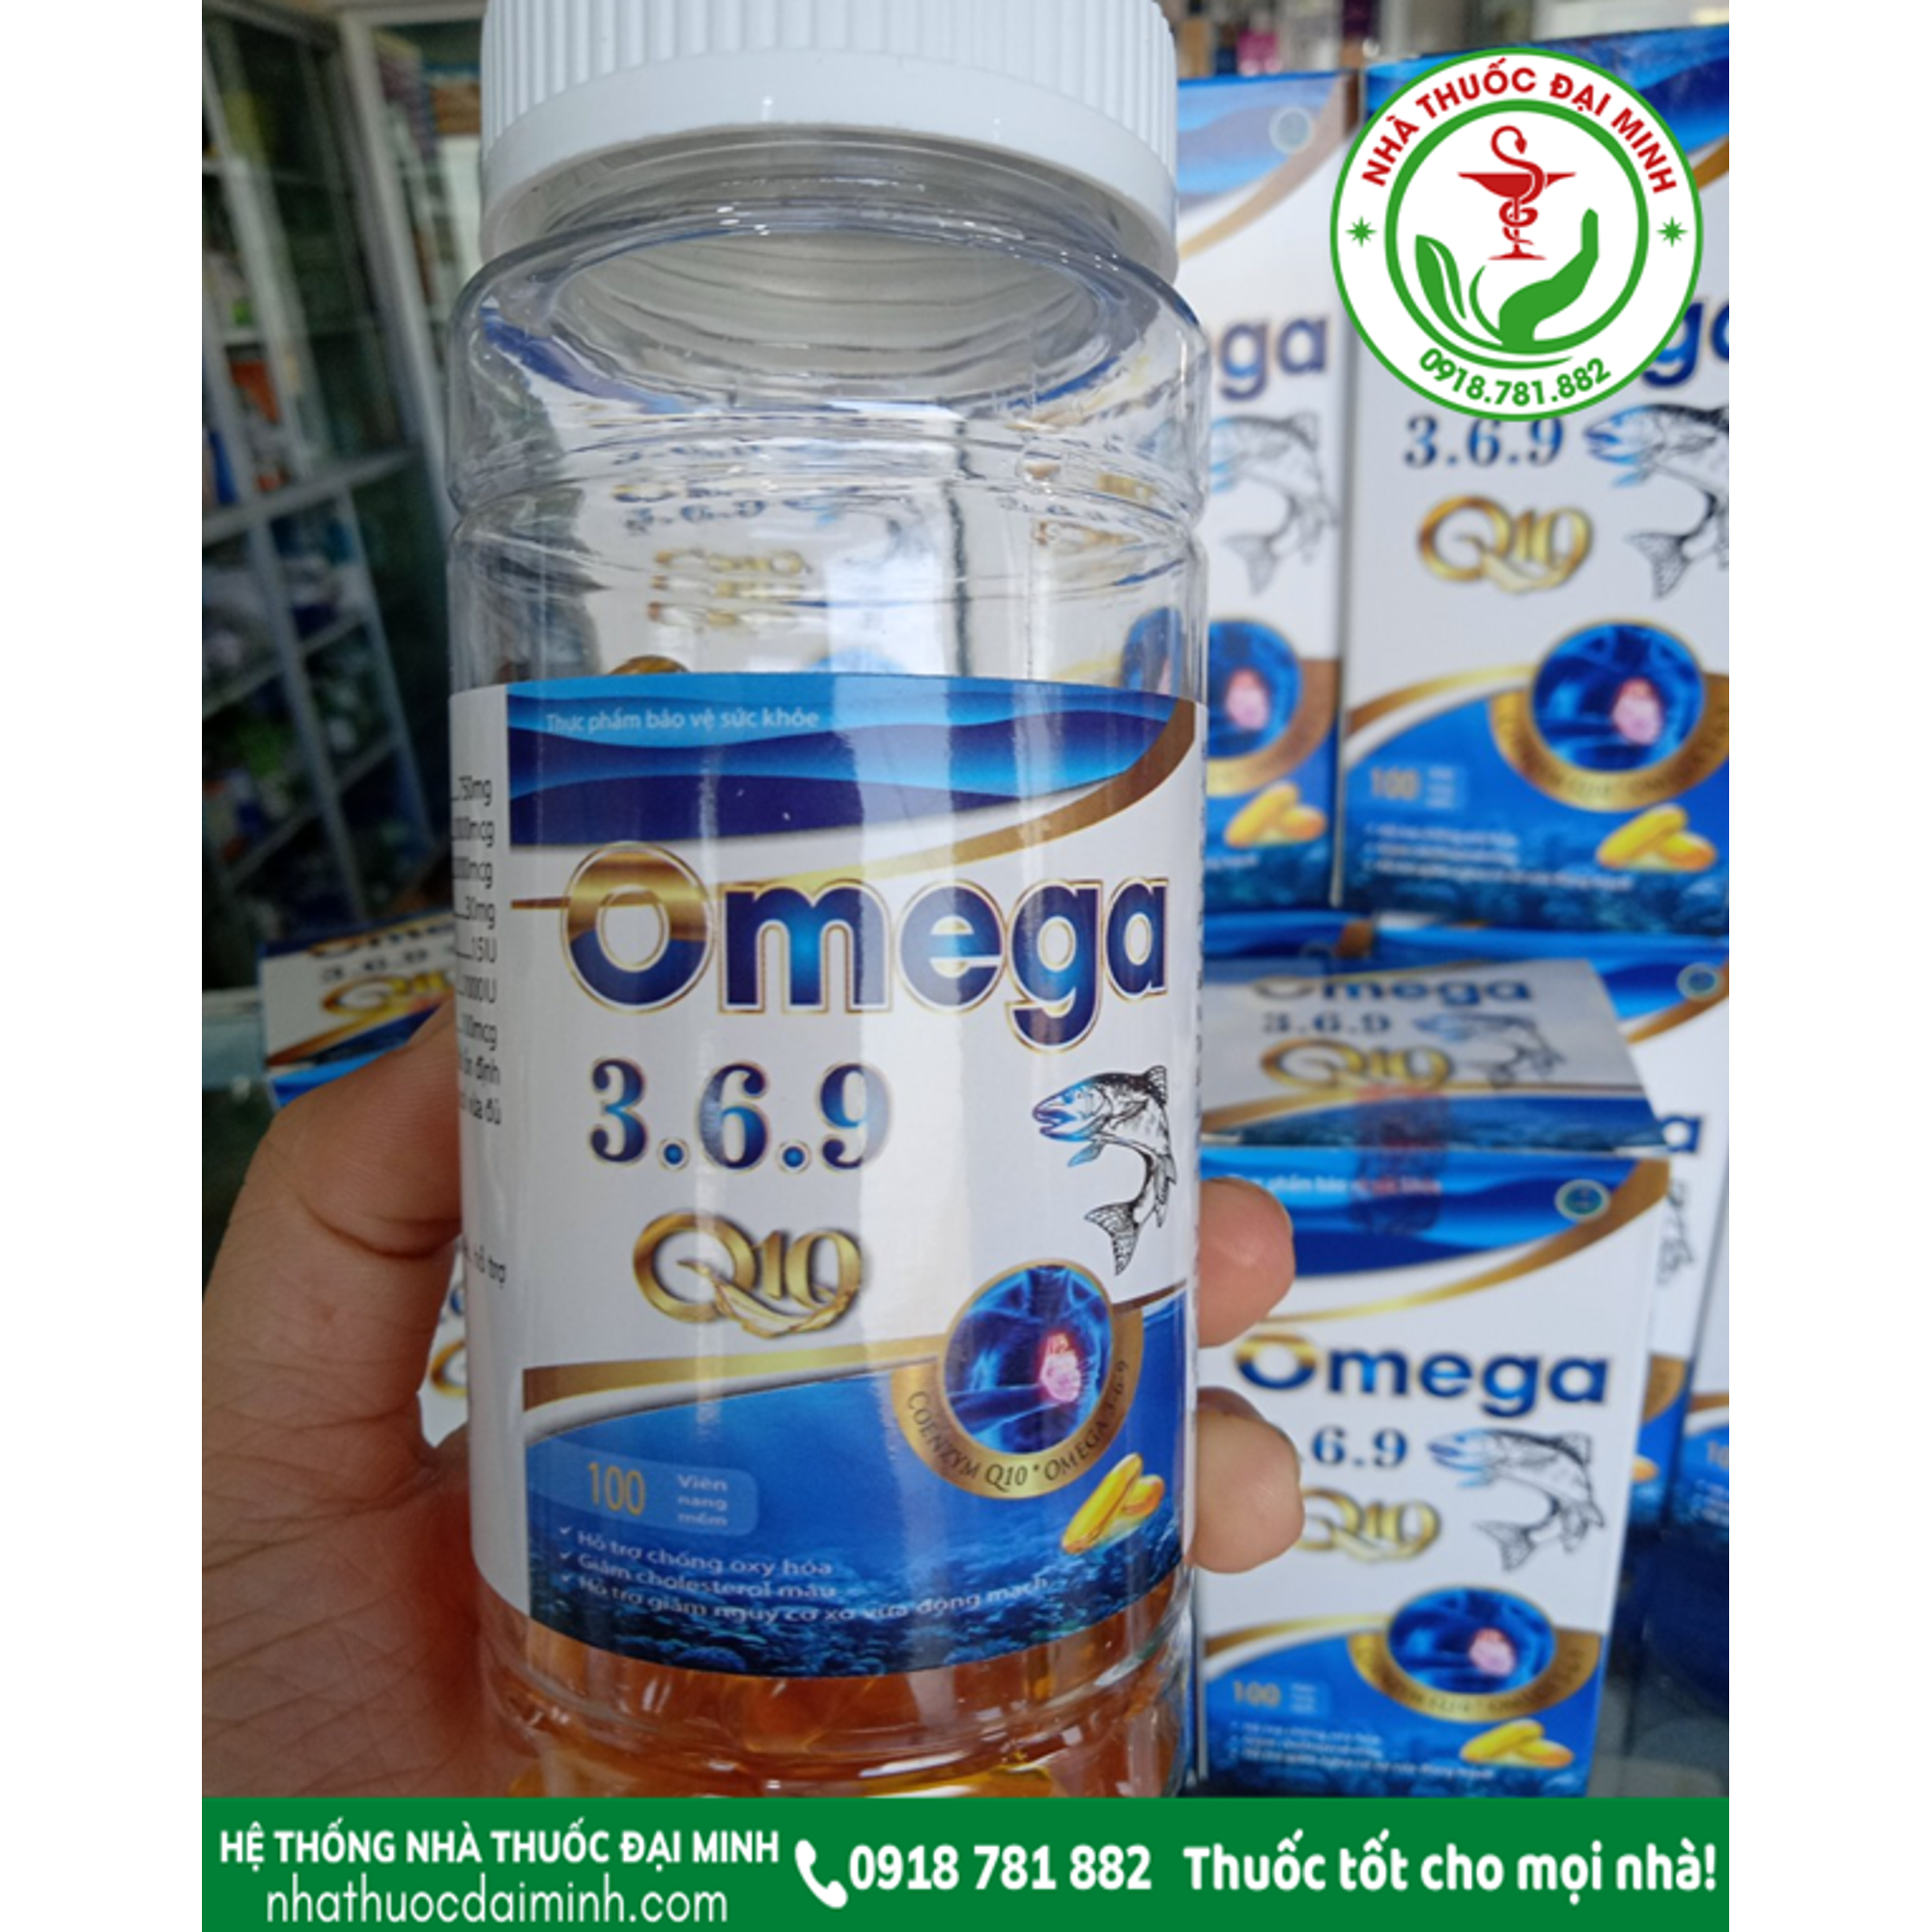 omega 3.6.9 q10